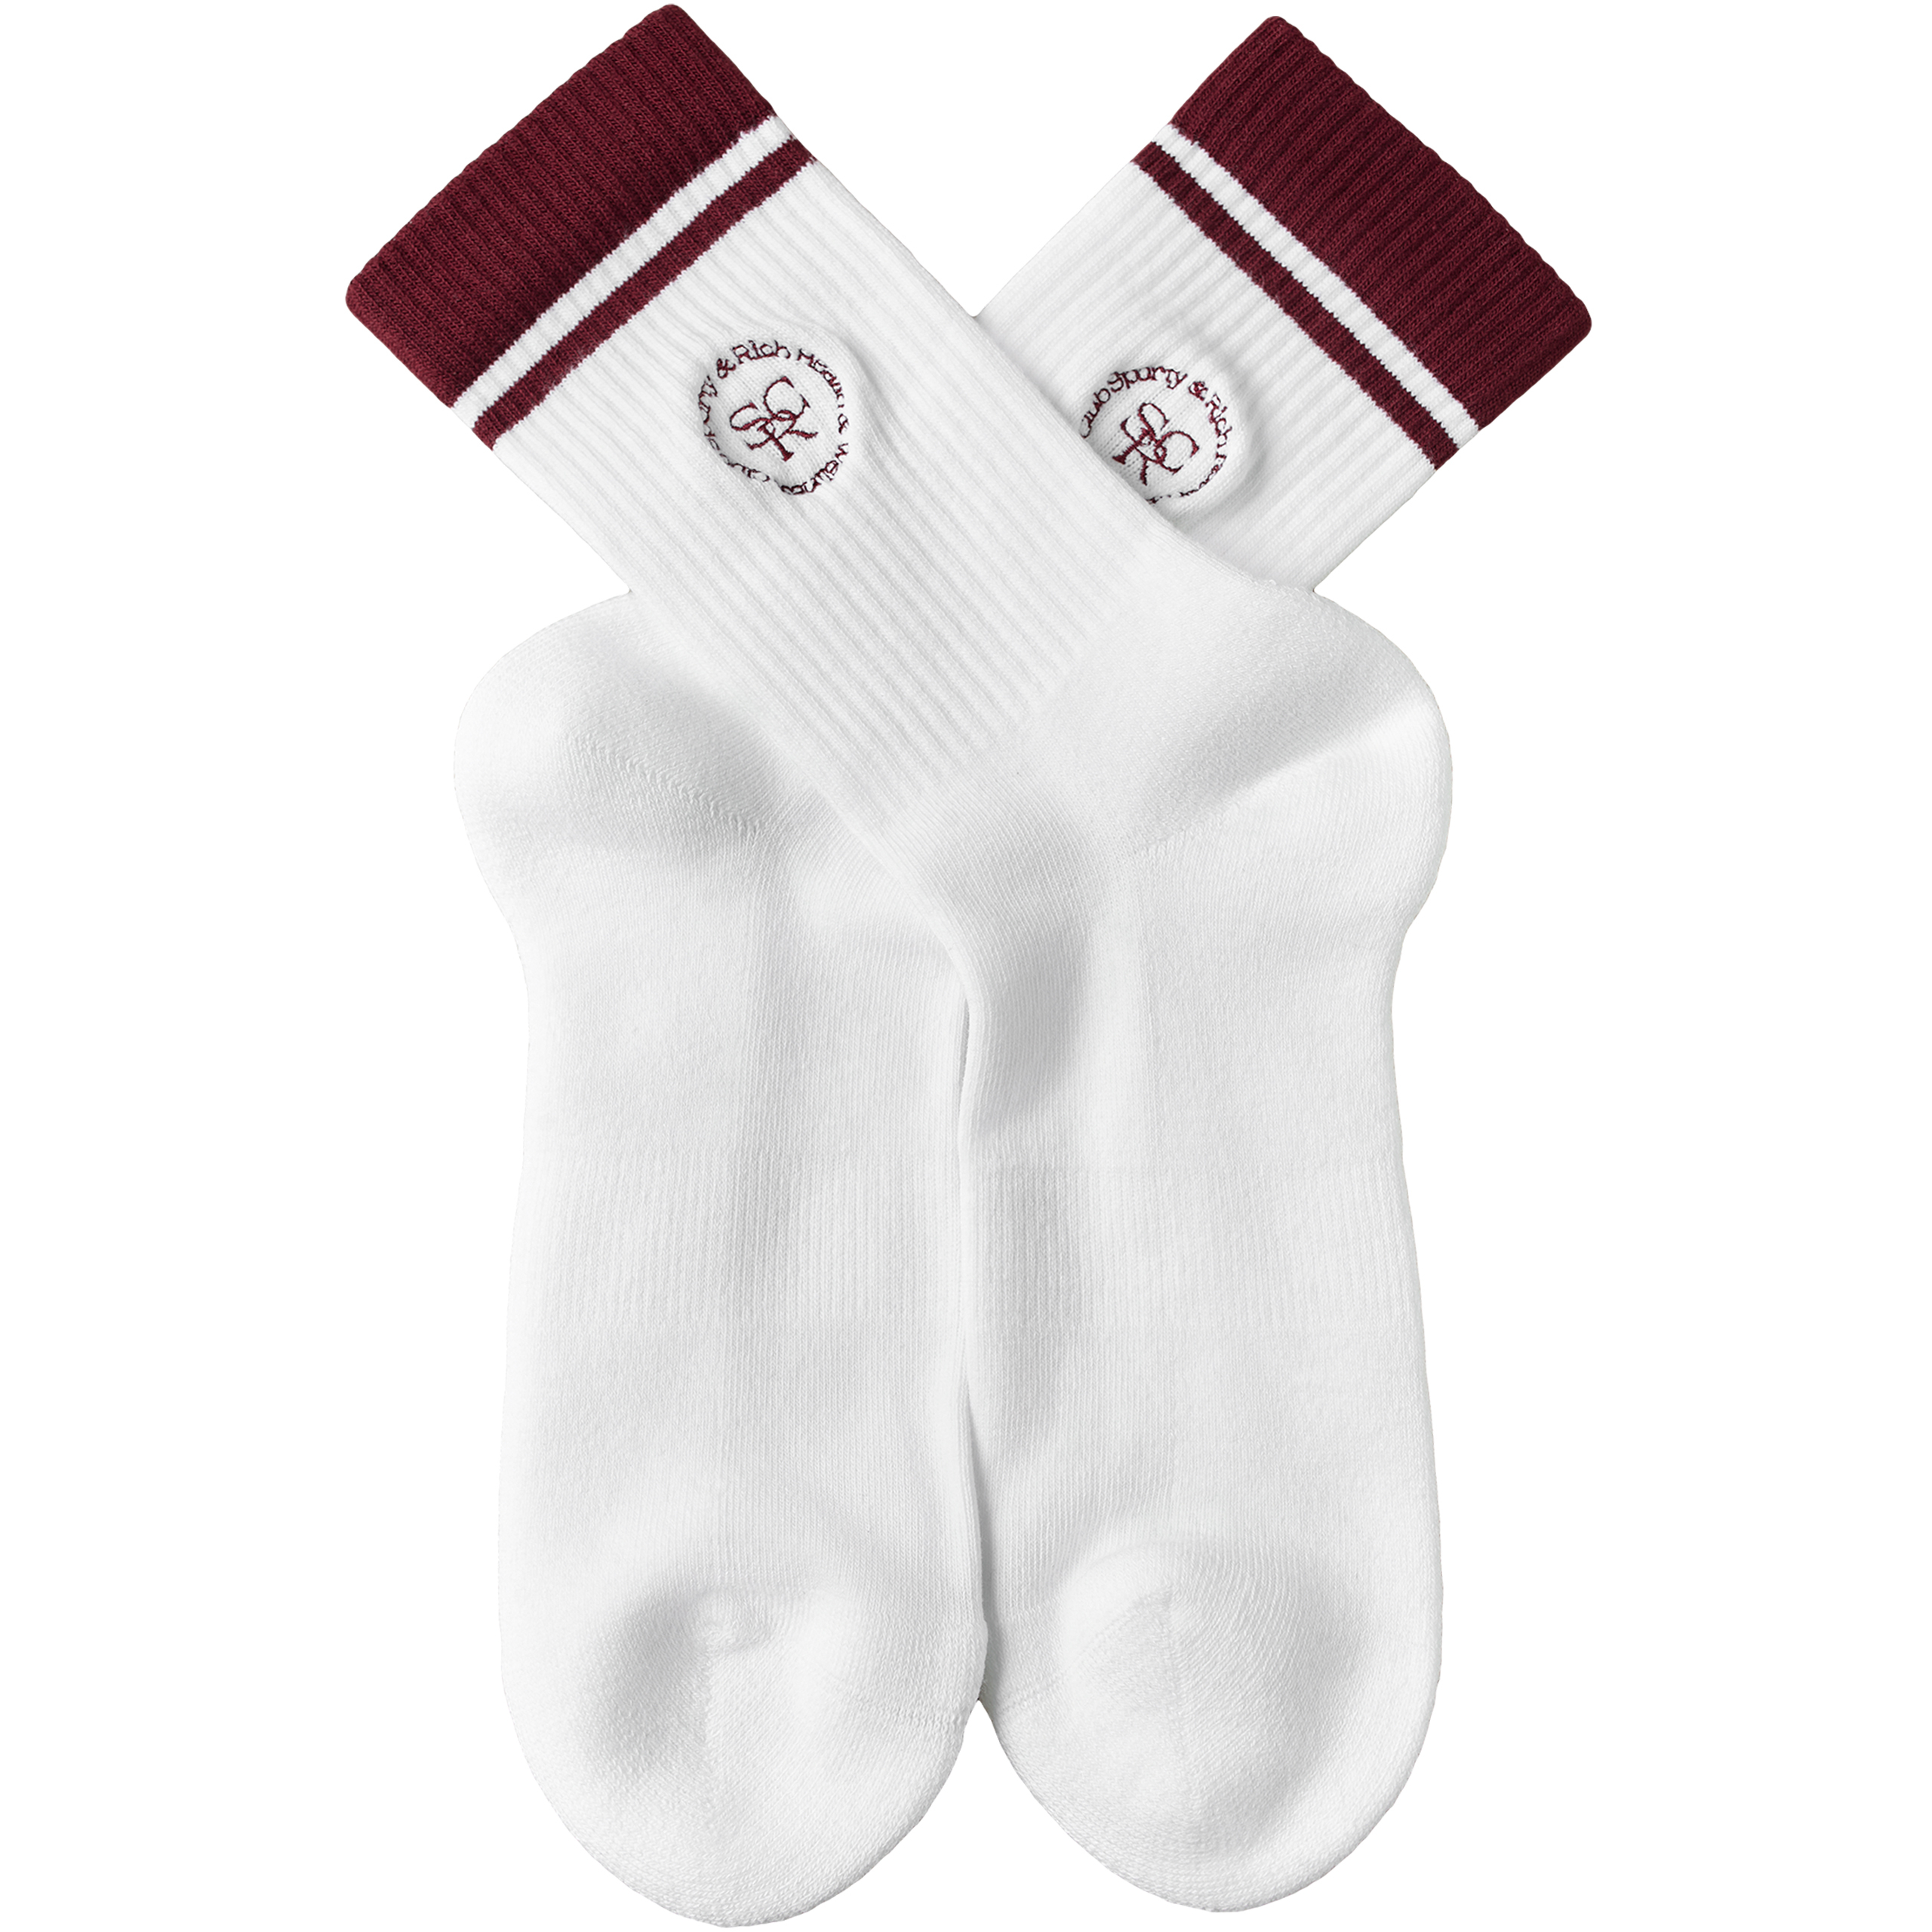 Белые носки с вышивкой SPORTY & RICH SOAW232WH, размер One Size - фото 2